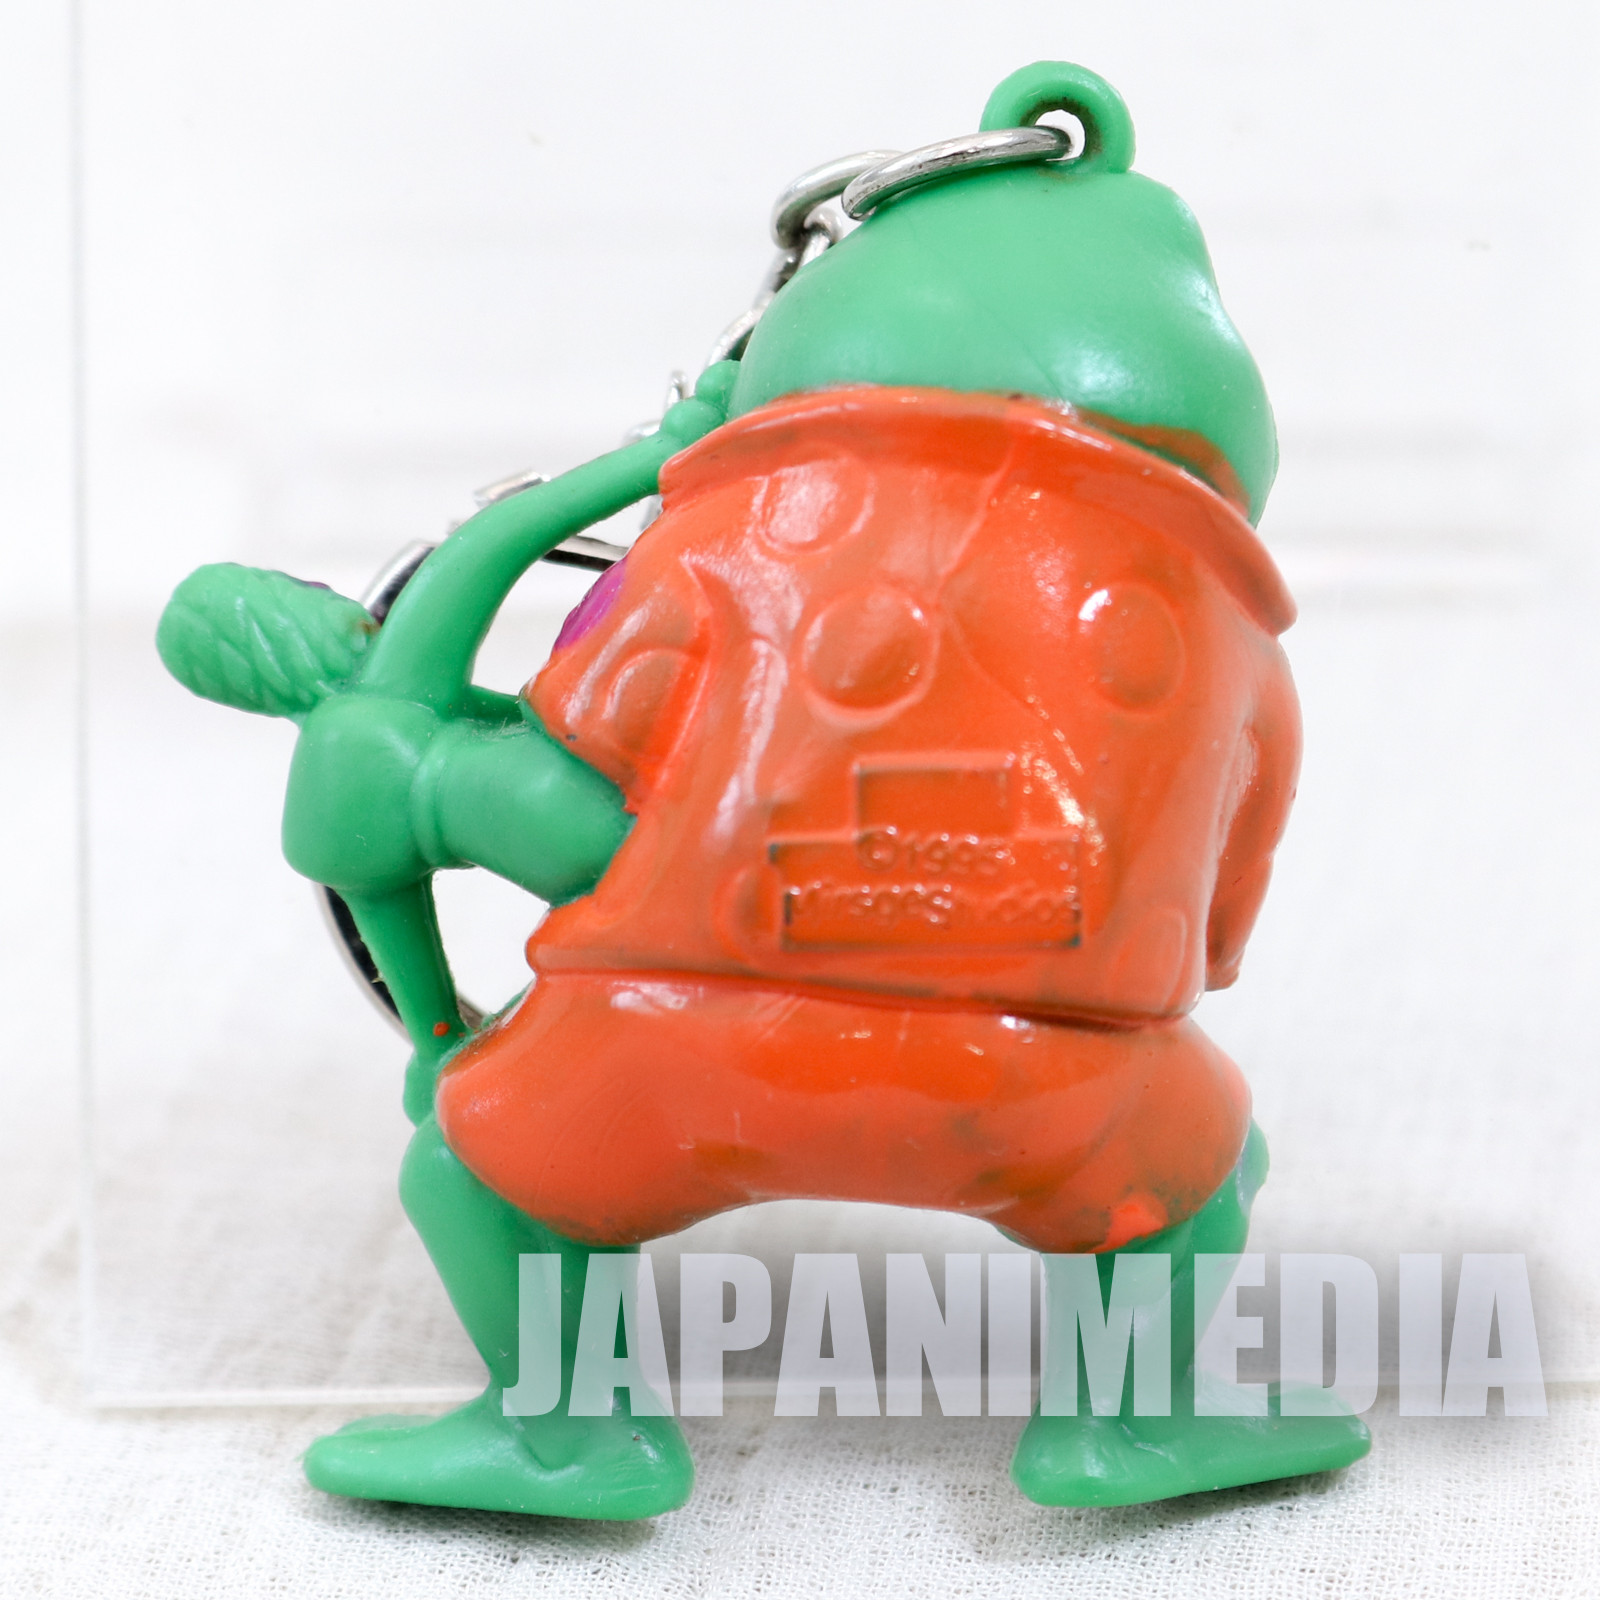 Retro RARE TMNT Teenage Mutant Ninja Turtles Punk Frog Figure Key Chain 1995